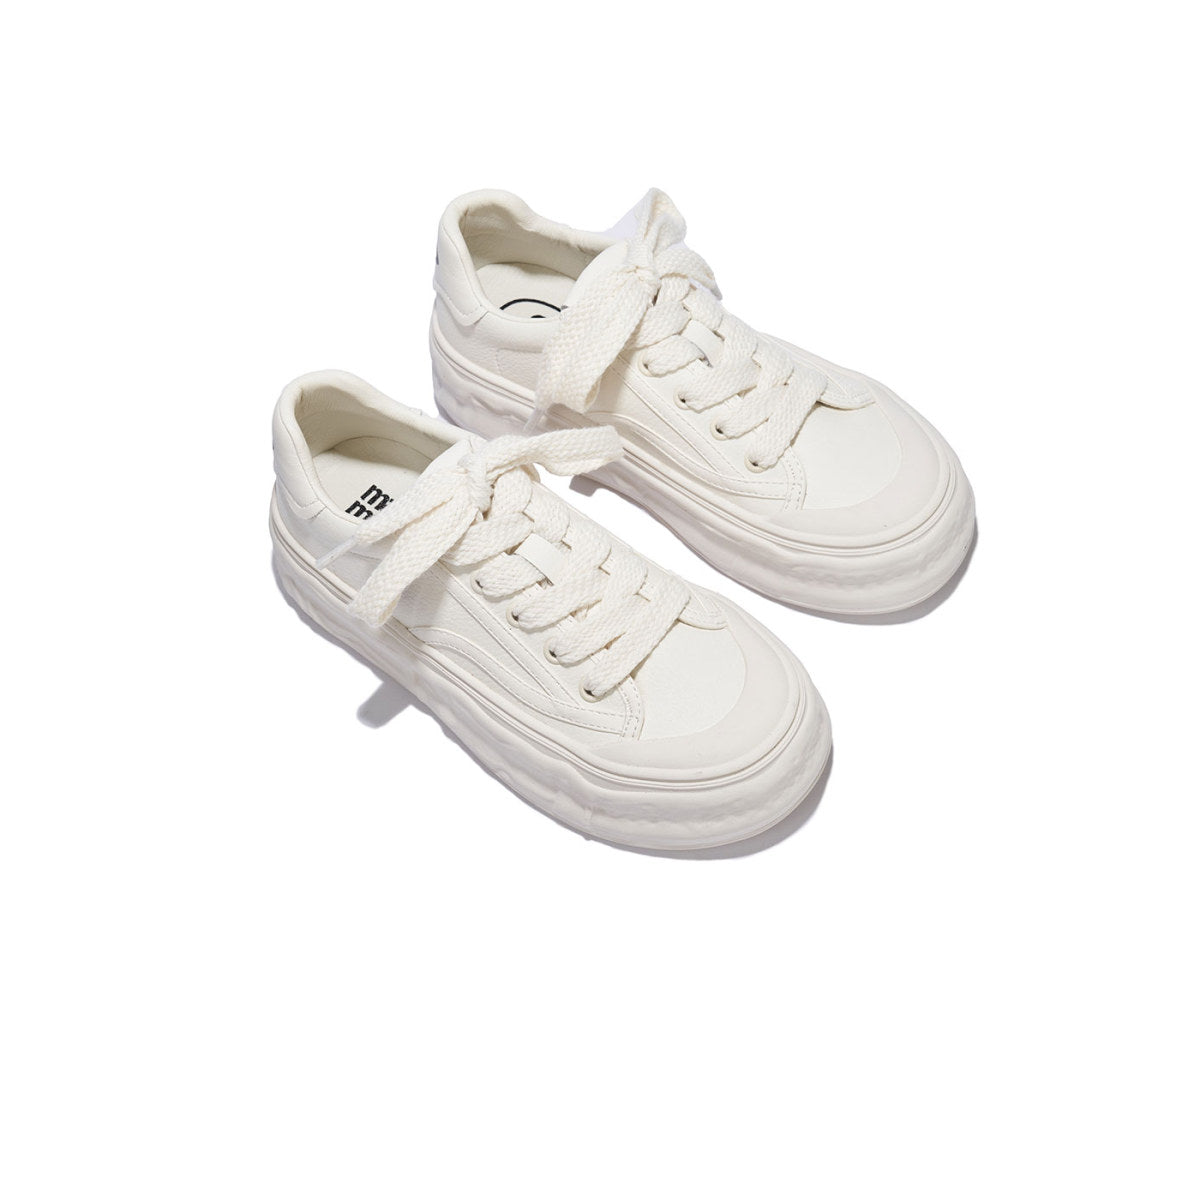 Icecream Platform White Sneakers